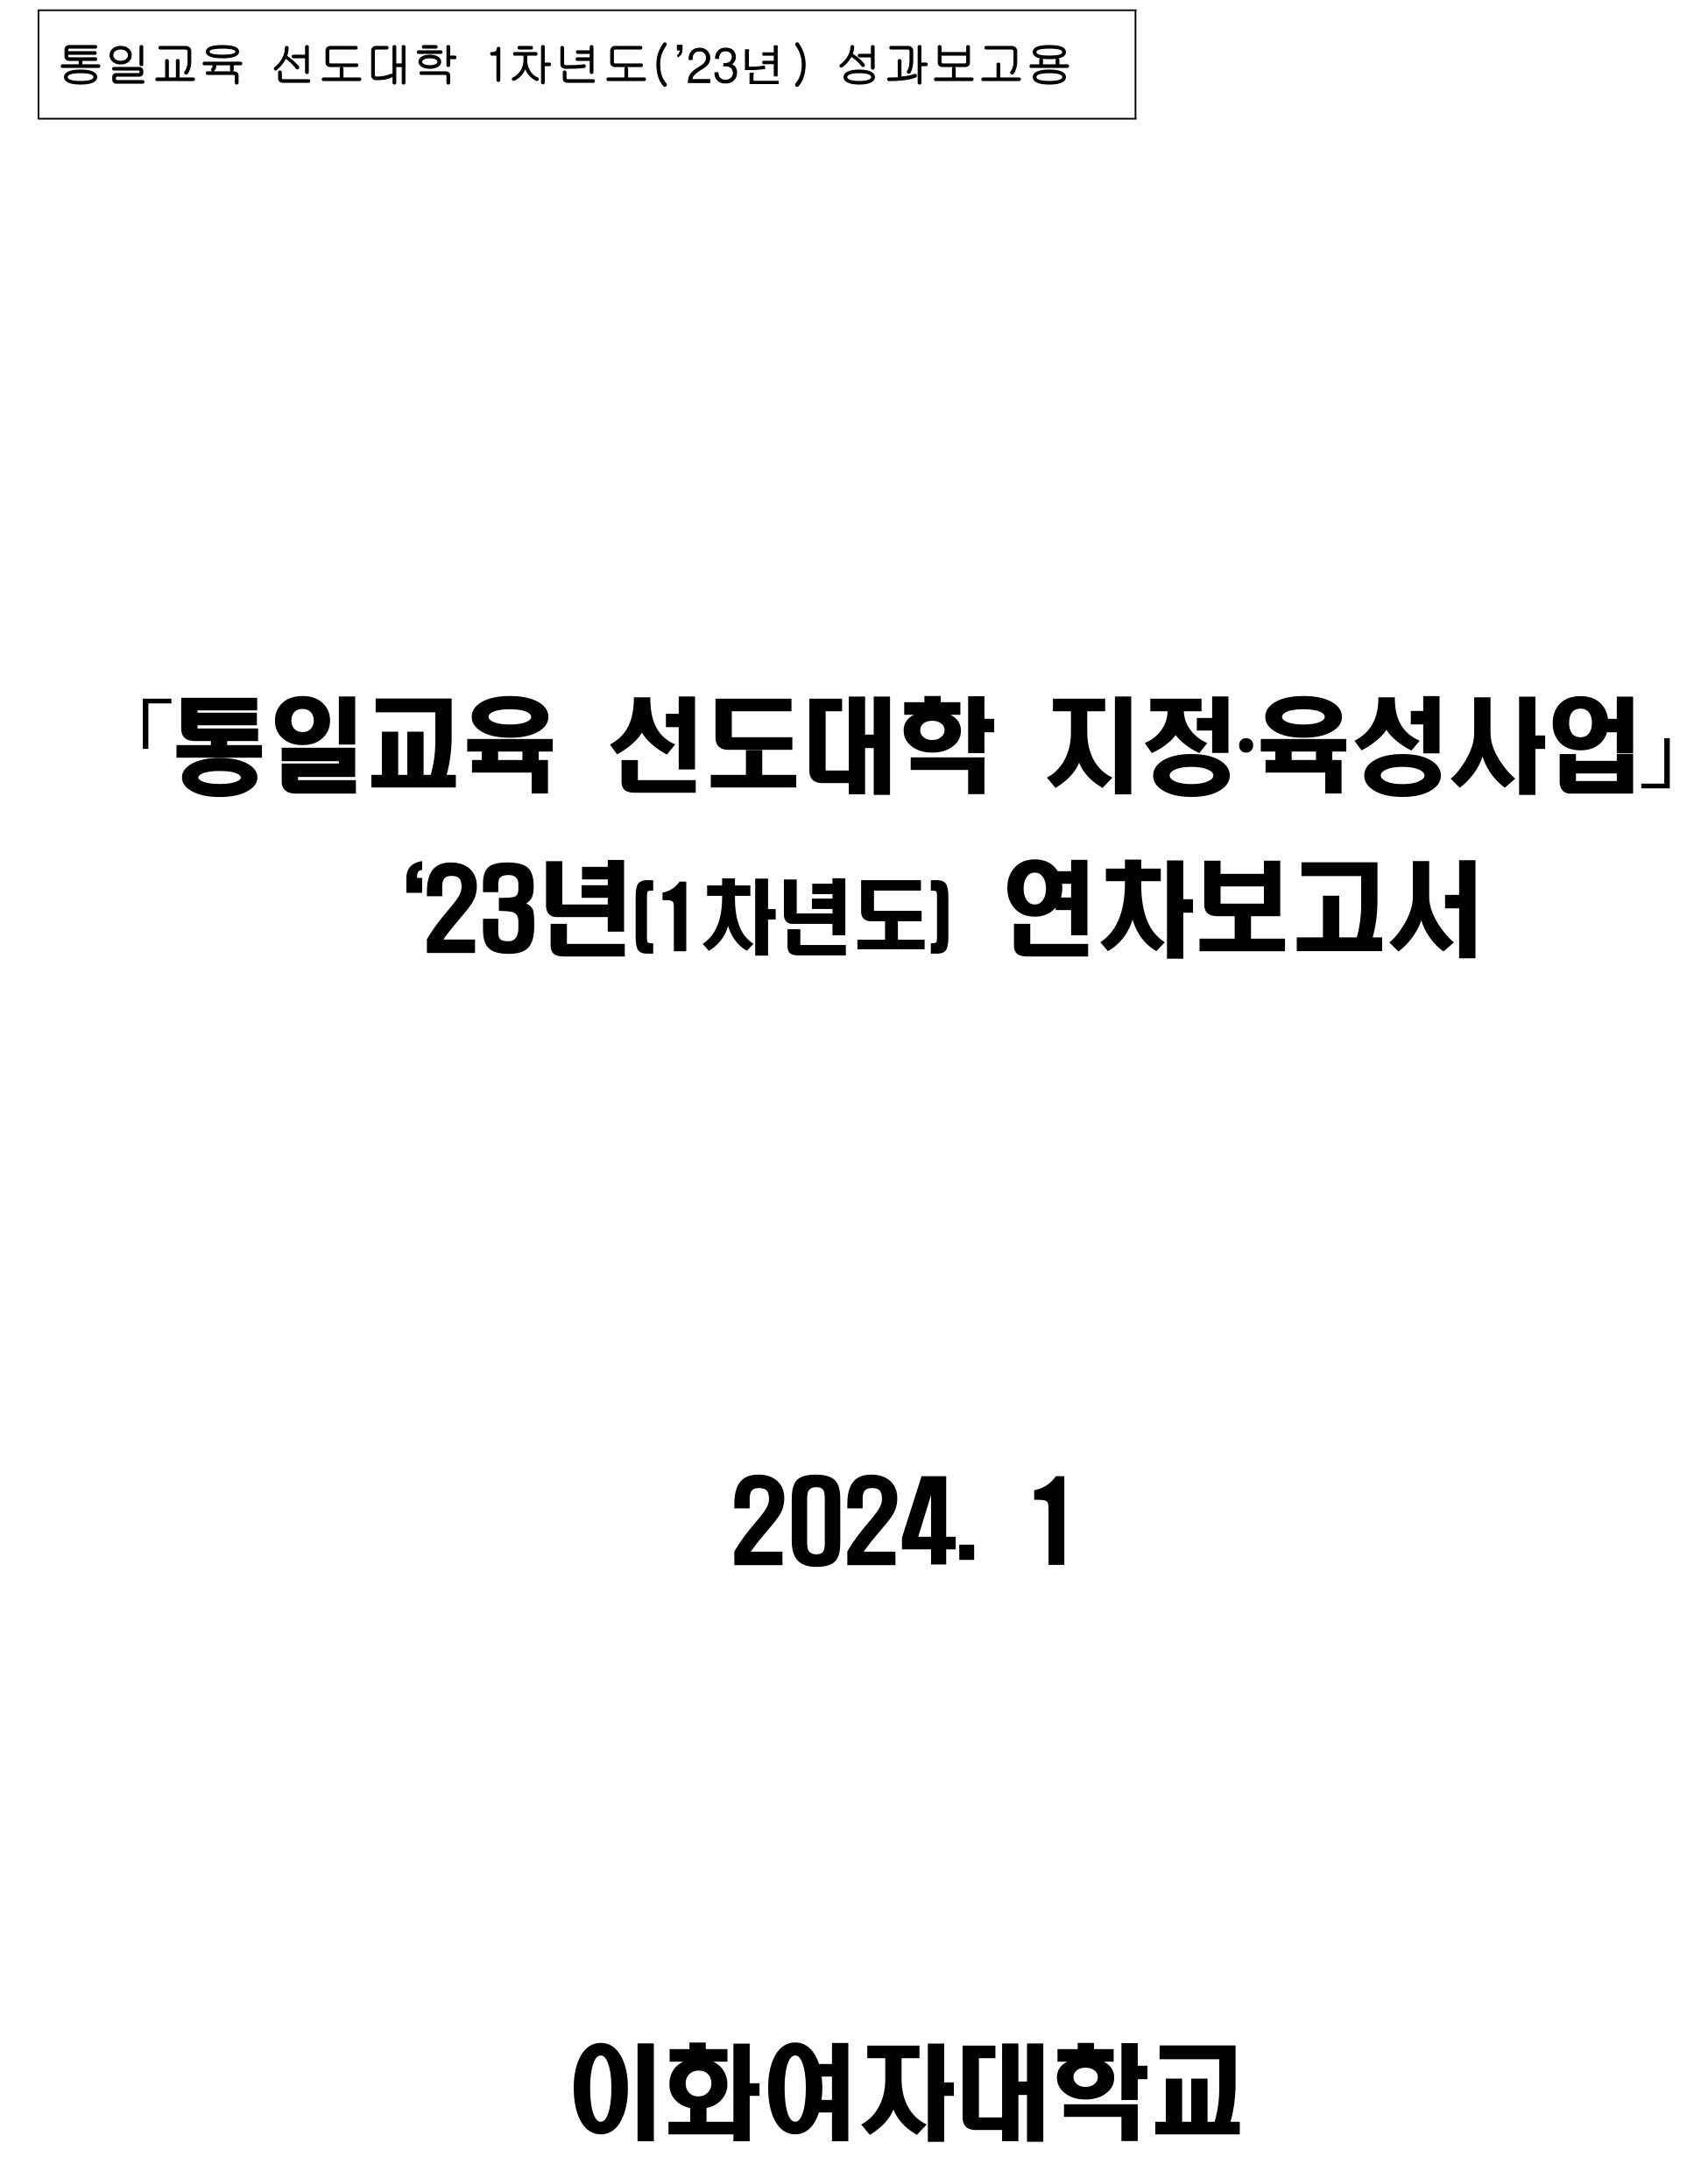 통일교육 선도대학 2023년 성과보고서(이화여자대학교)